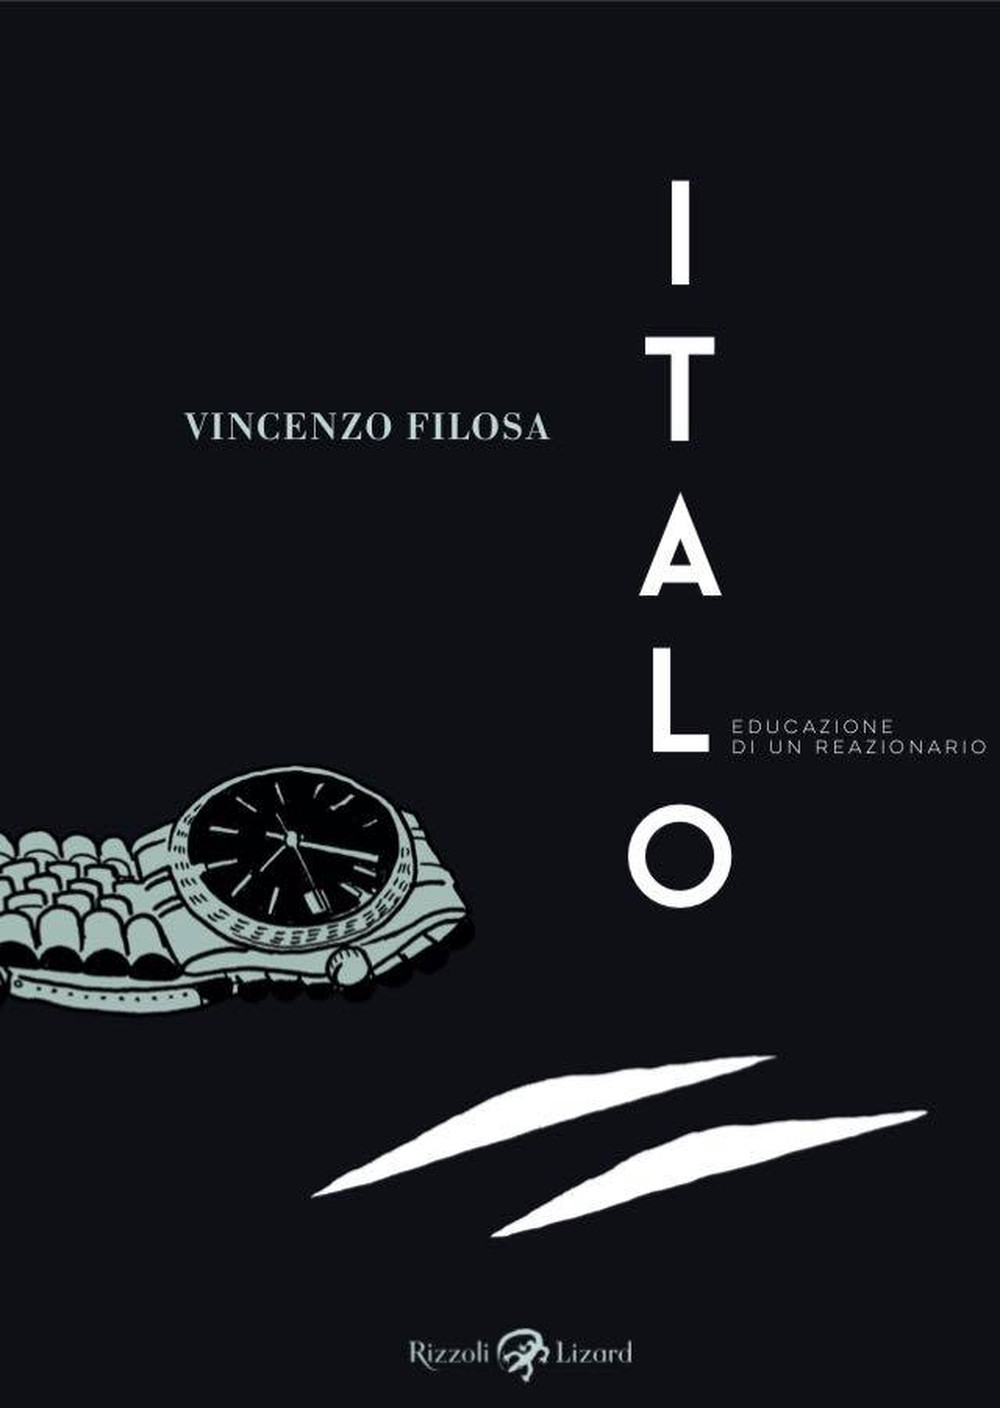 Vincenzo Filosa – Italo (Rizzoli Lizard, Milano 2019)